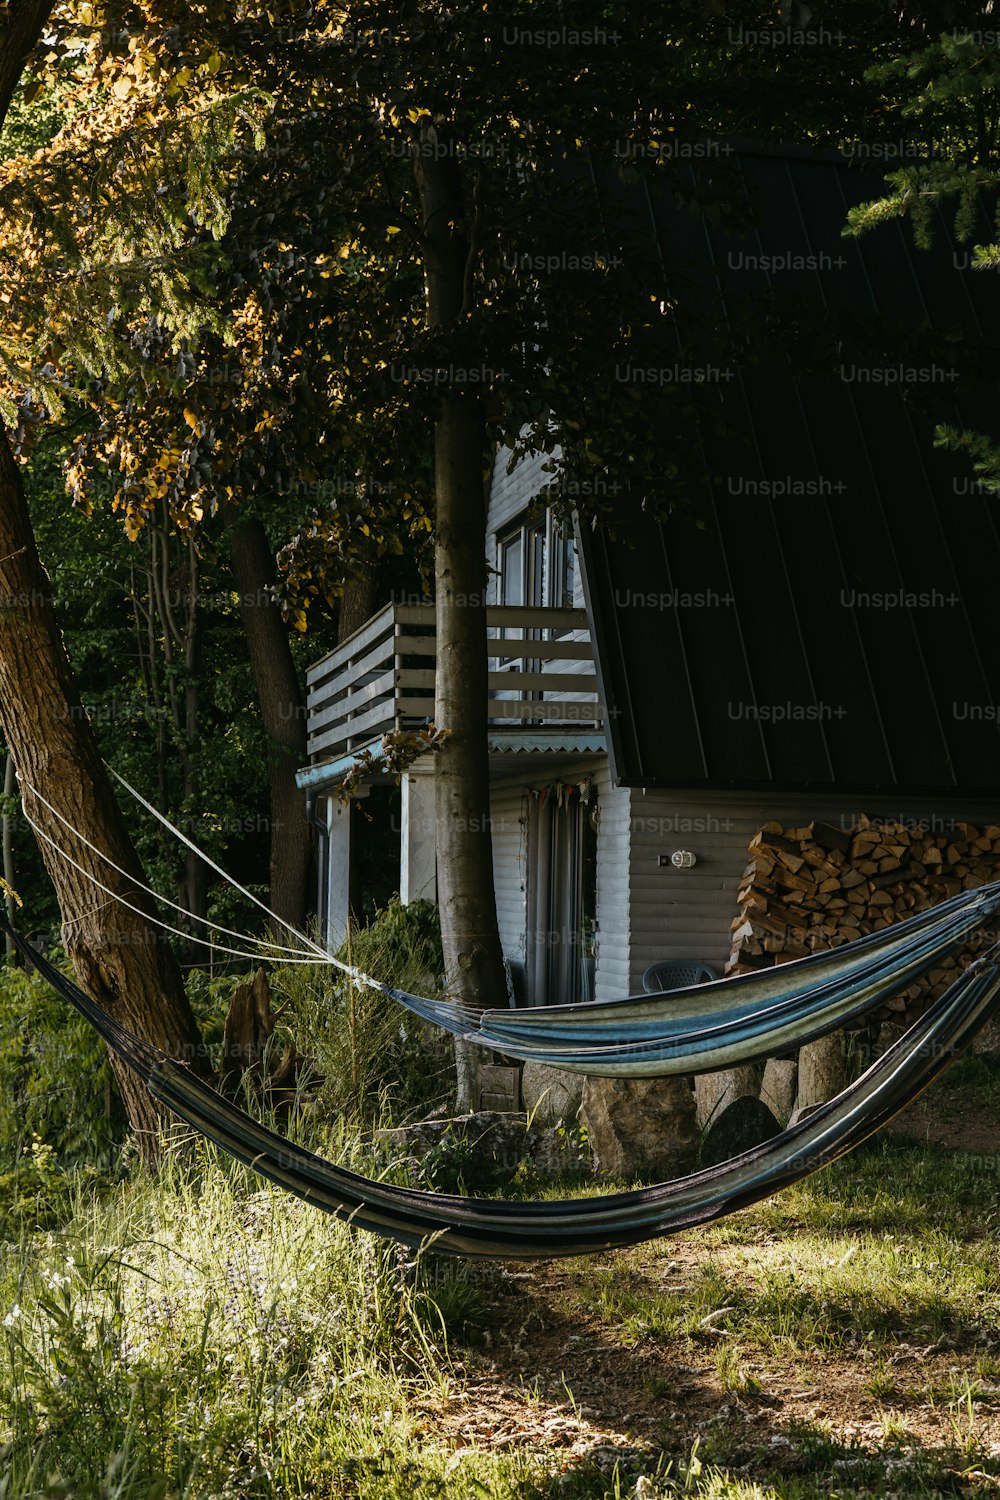 Un hamac suspendu à un arbre devant une maison